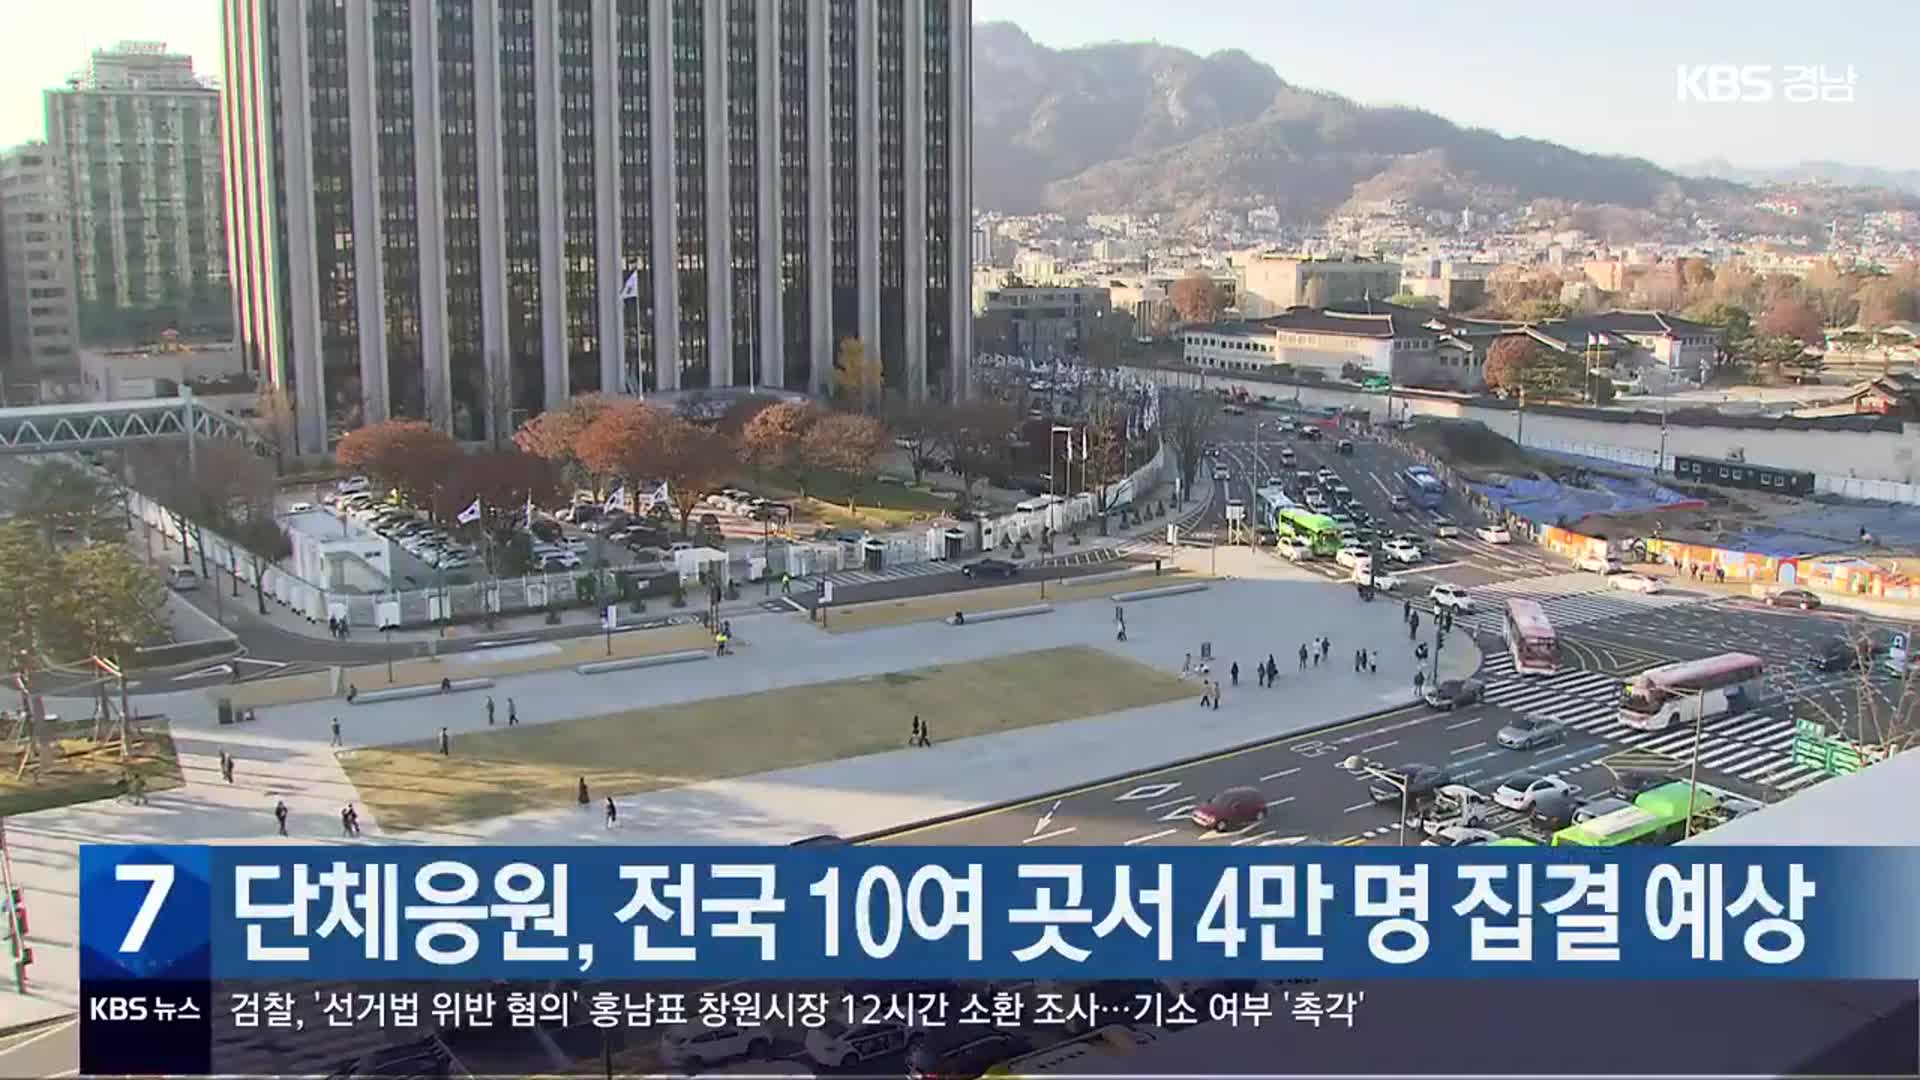 단체응원, 전국 10여 곳서 4만 명 집결 예상